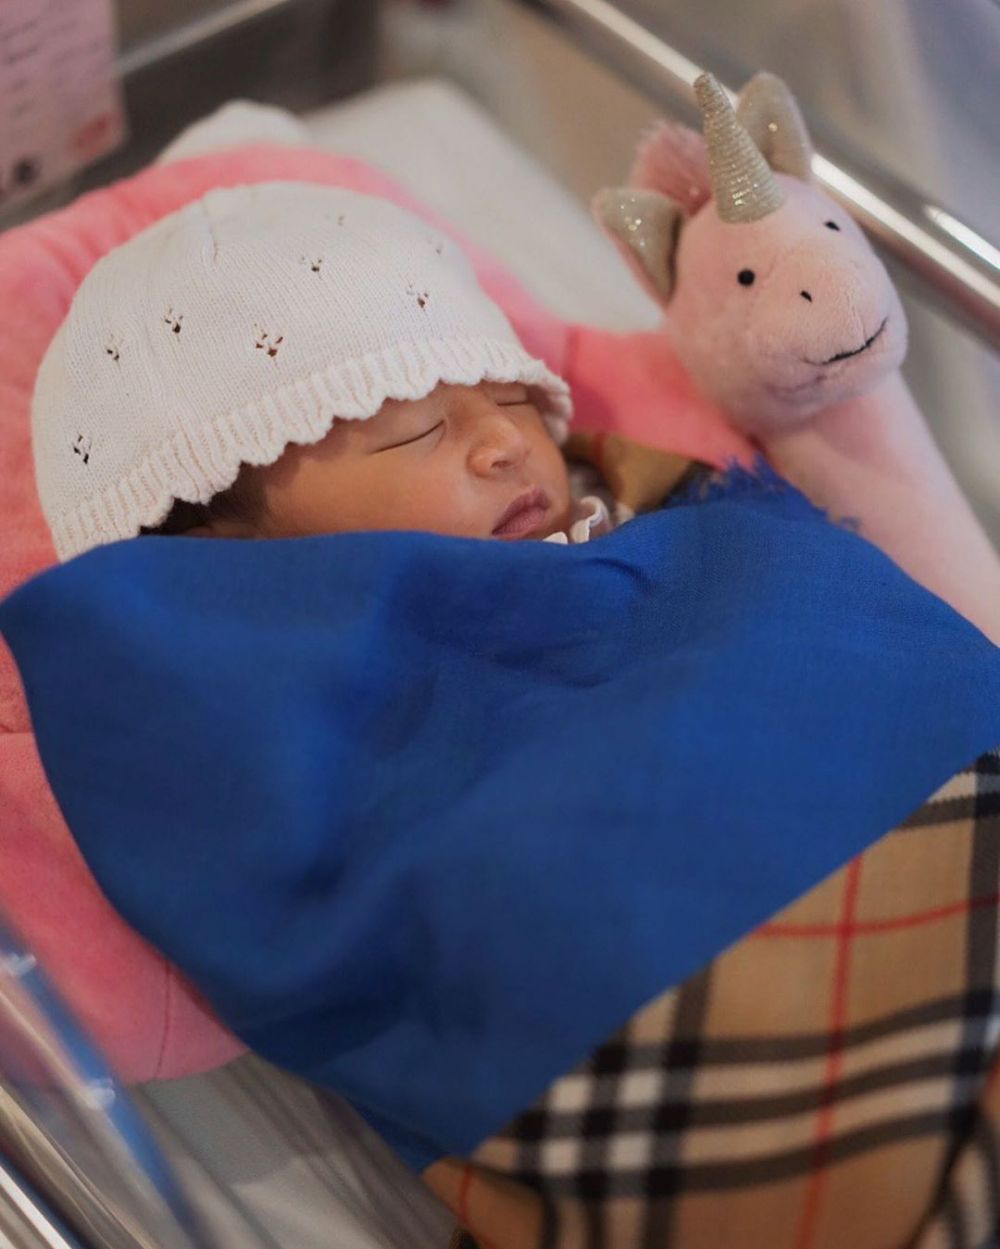 Harga 5 selimut bayi milik anak Ruben Onsu, ada yang Rp 10 juta